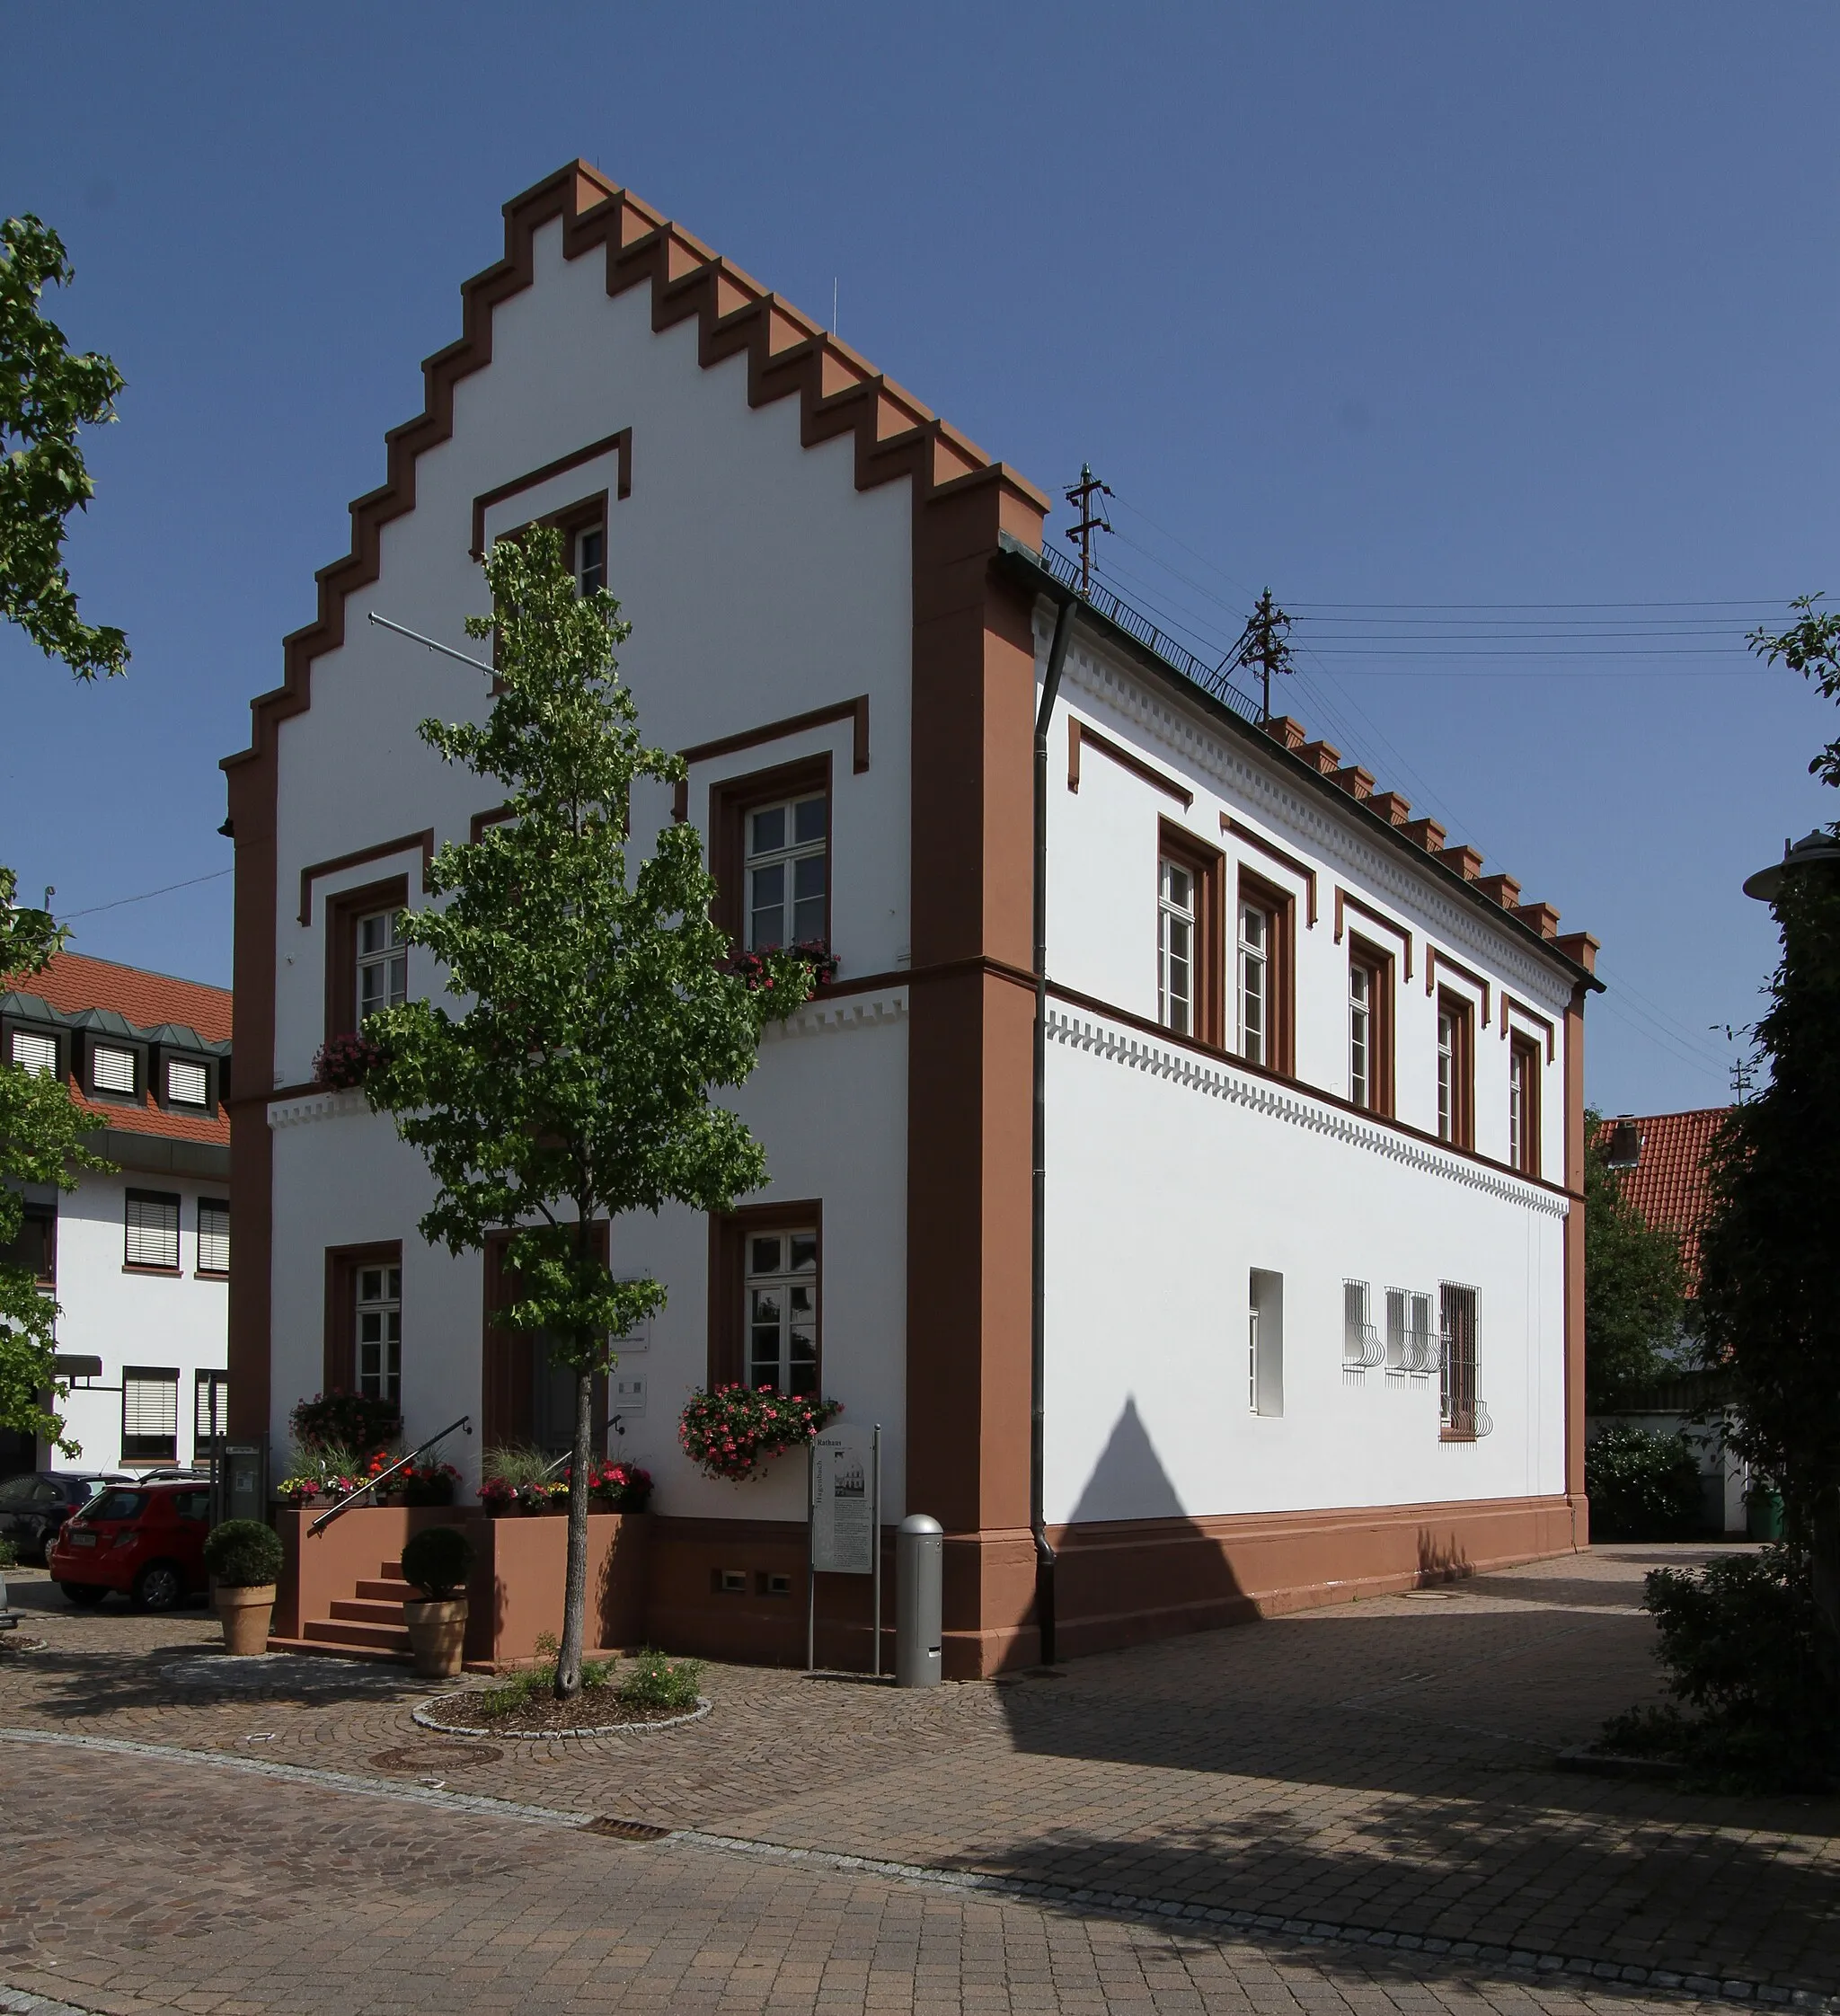 Image of Hagenbach